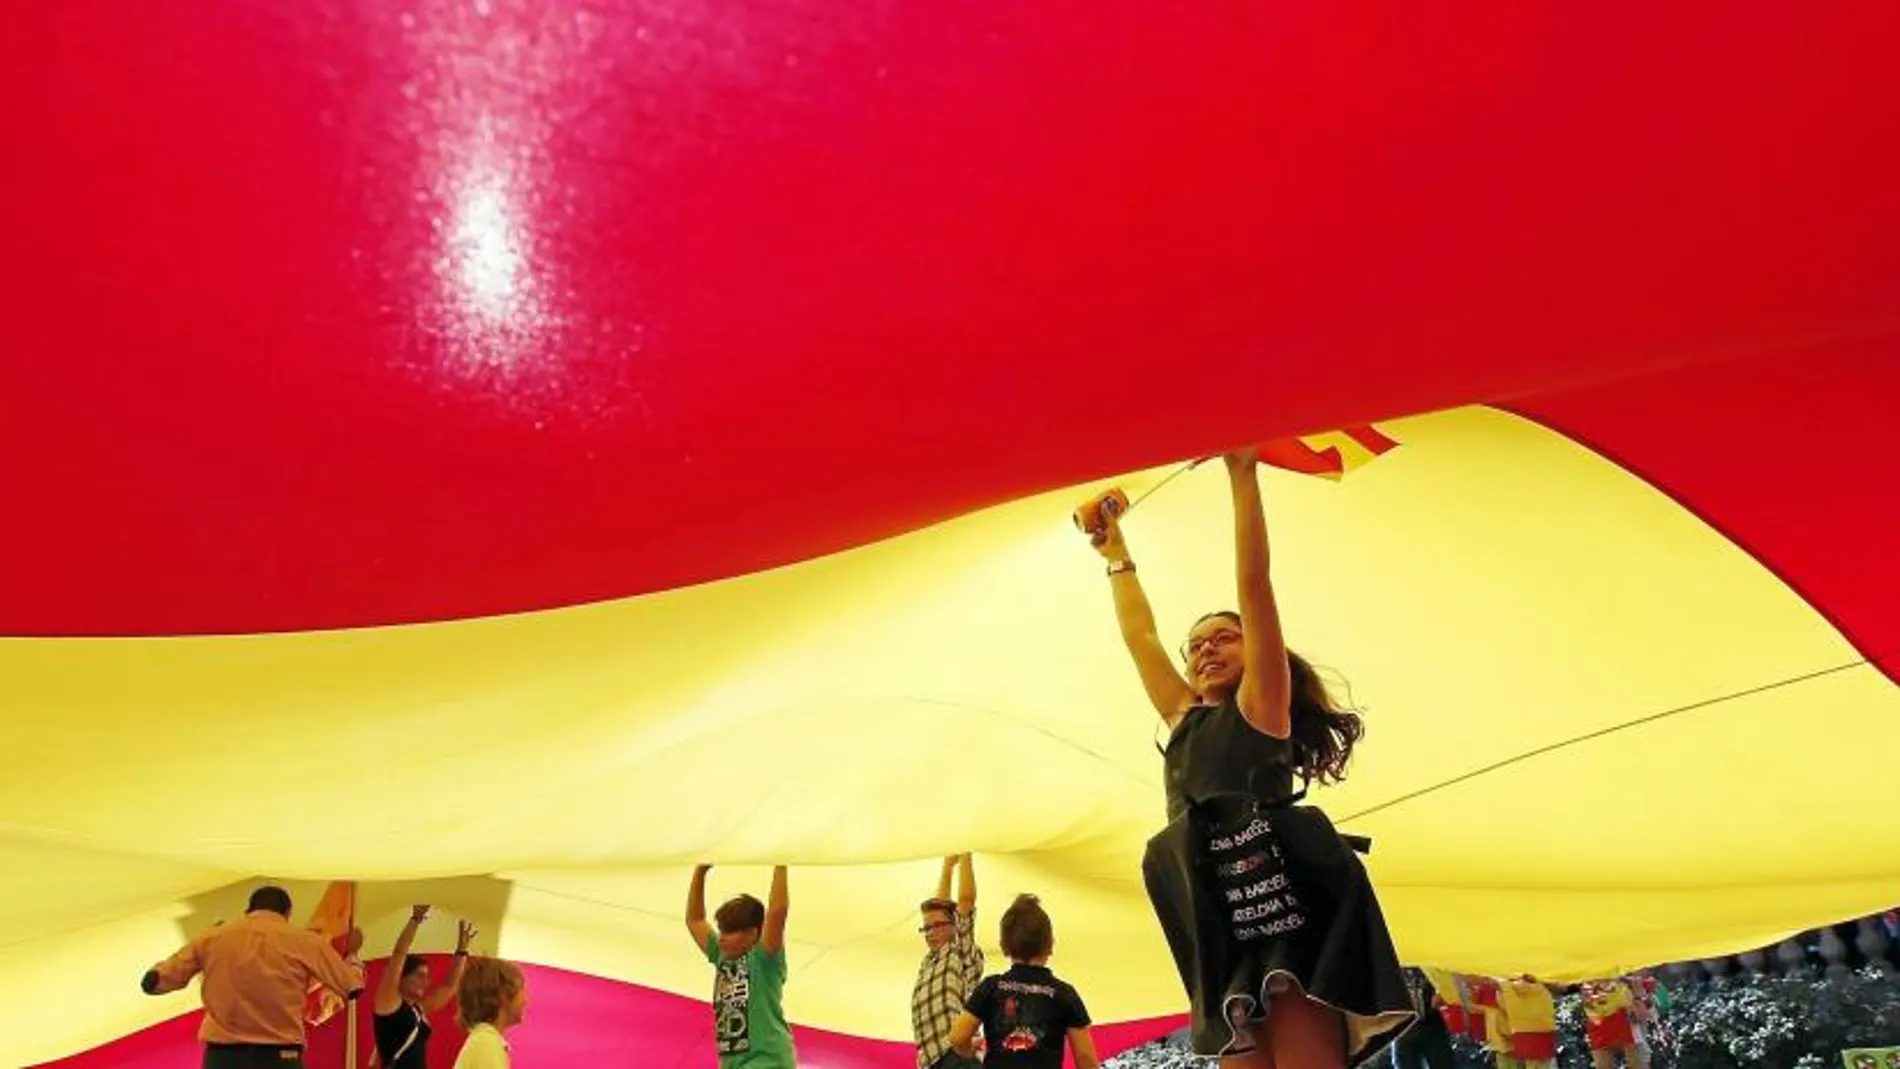 Niños juegan bajo una bandera de España el 12 de octubre de 2014 en Barcelona